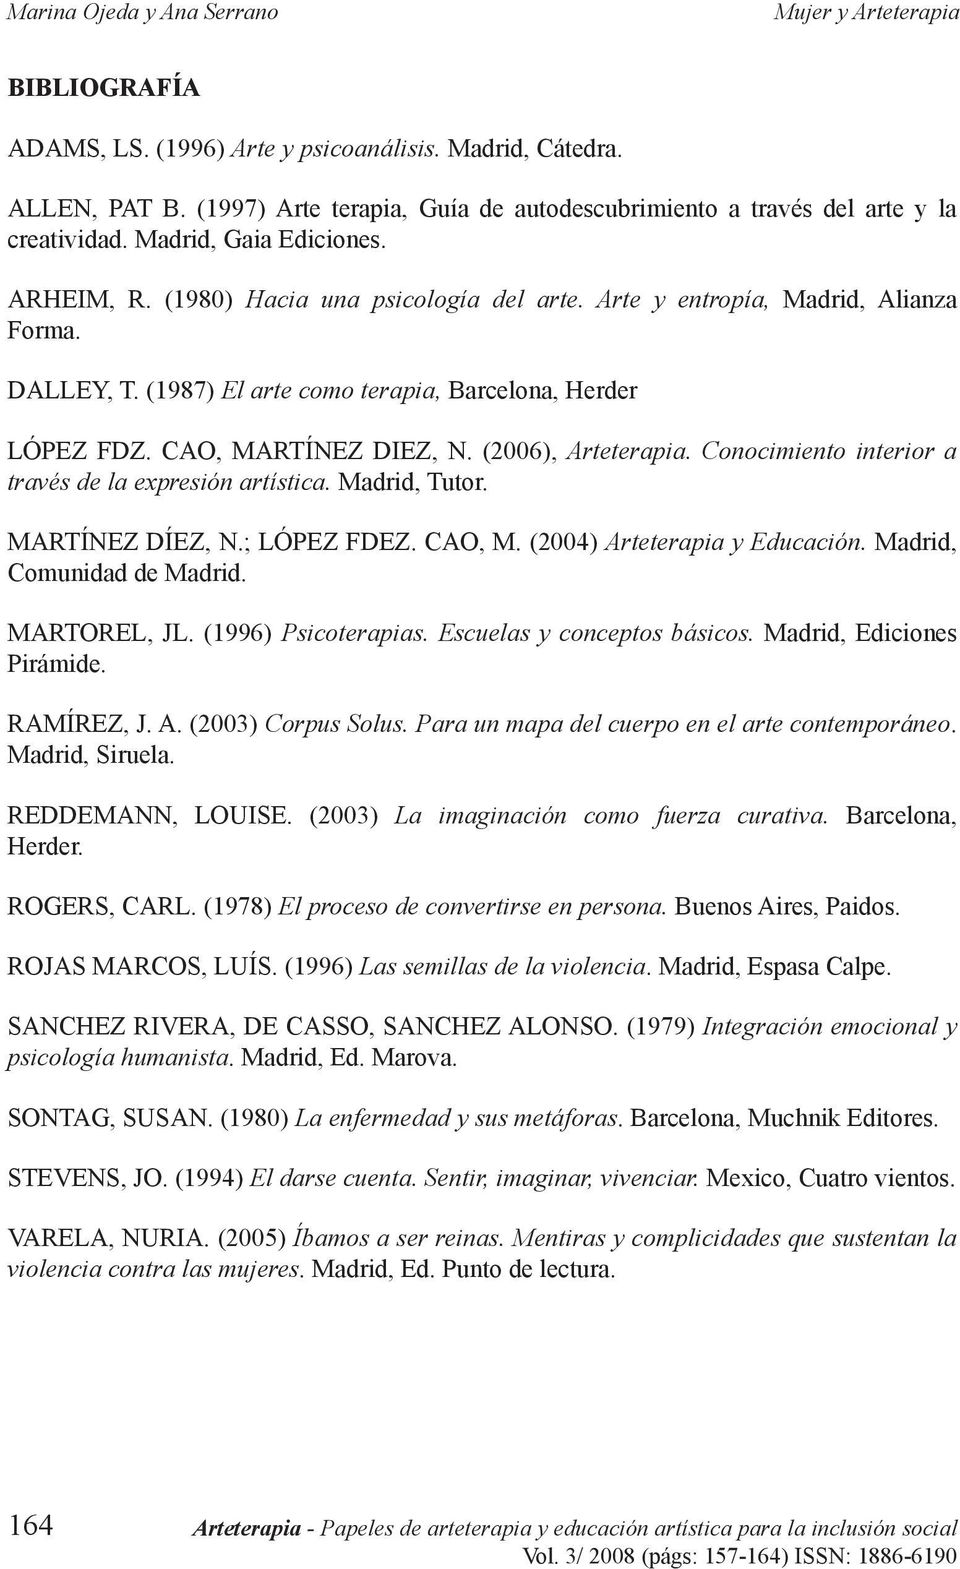 (2006), Arteterapia. Conocimiento interior a través de la expresión artística. Madrid, Tutor. MARTÍNEZ DÍEZ, N.; LÓPEZ FDEZ. CAO, M. (2004) Arteterapia y Educación. Madrid, Comunidad de Madrid.